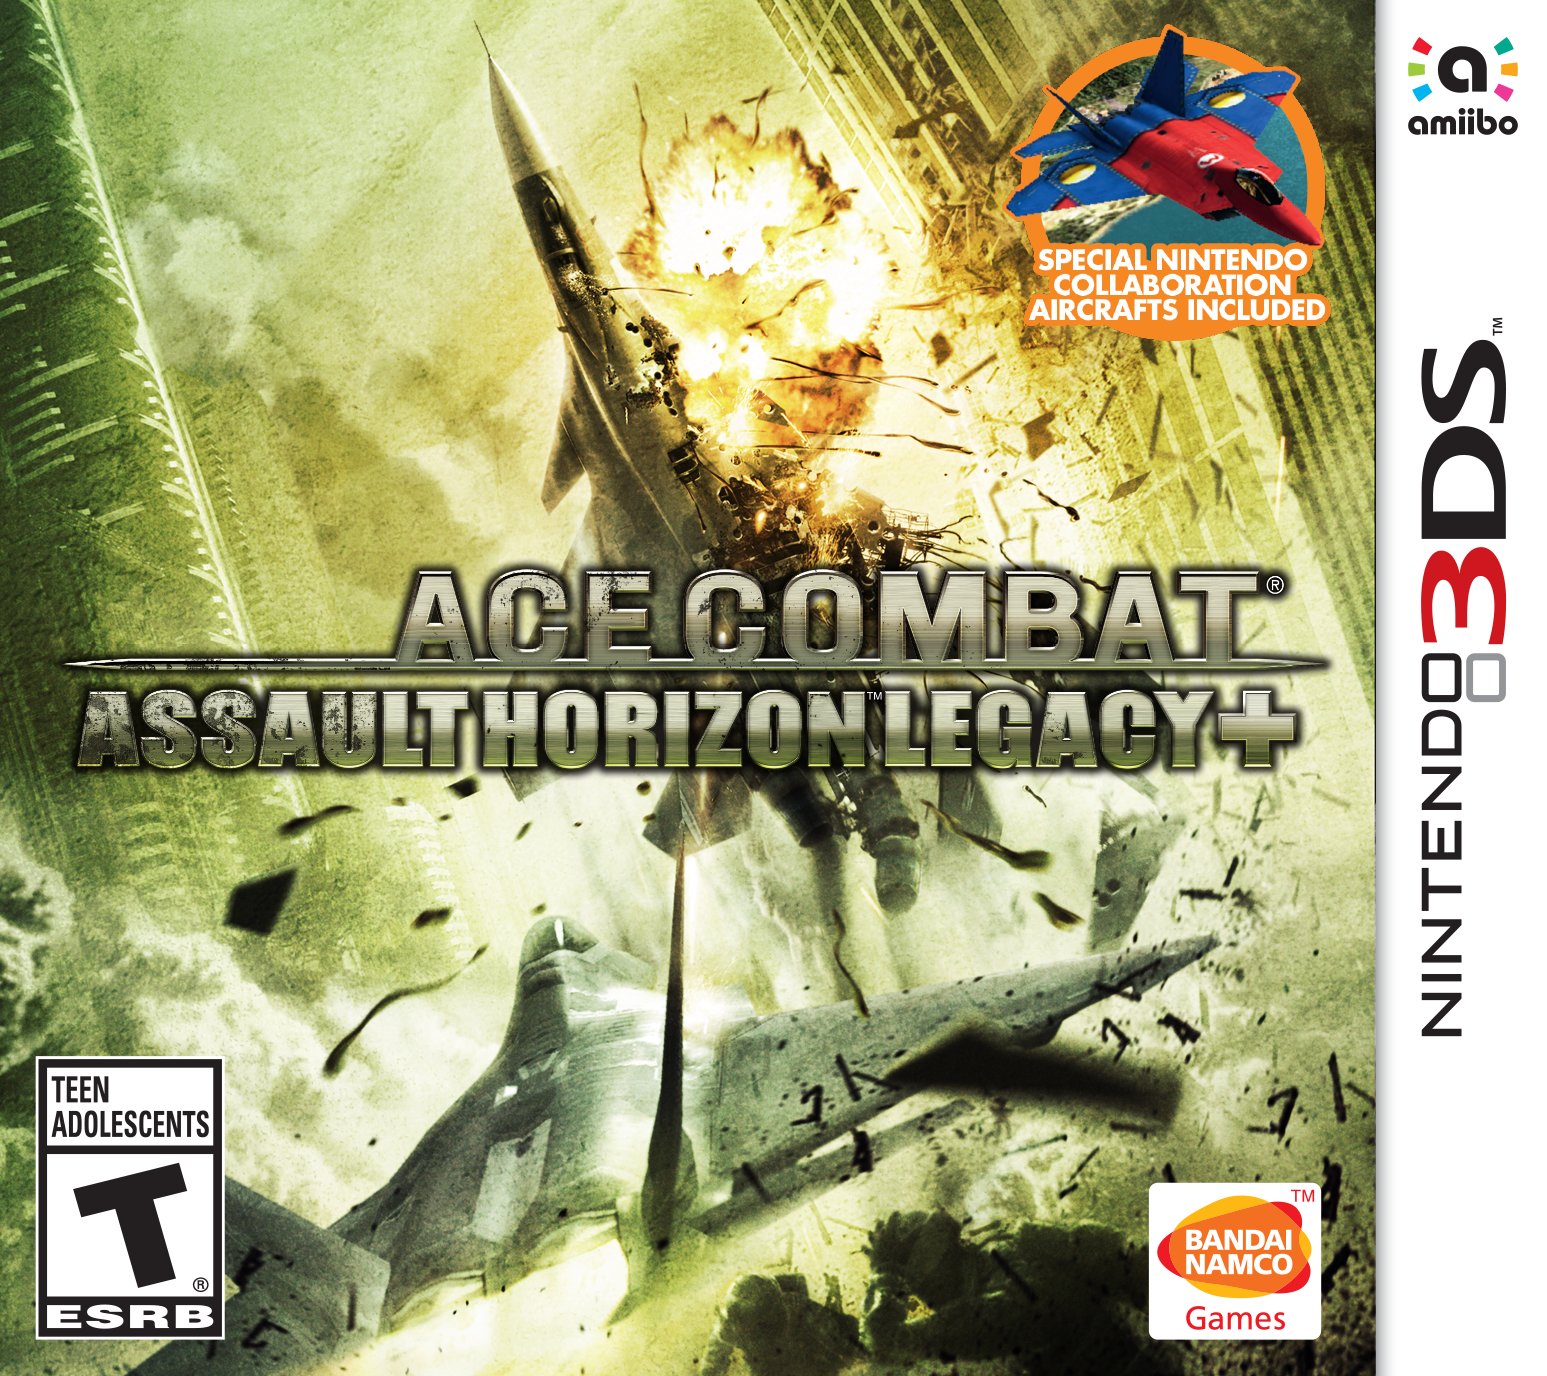 Ace Combat Assault Horizon Legacy - Nintendo 3DS Játékok